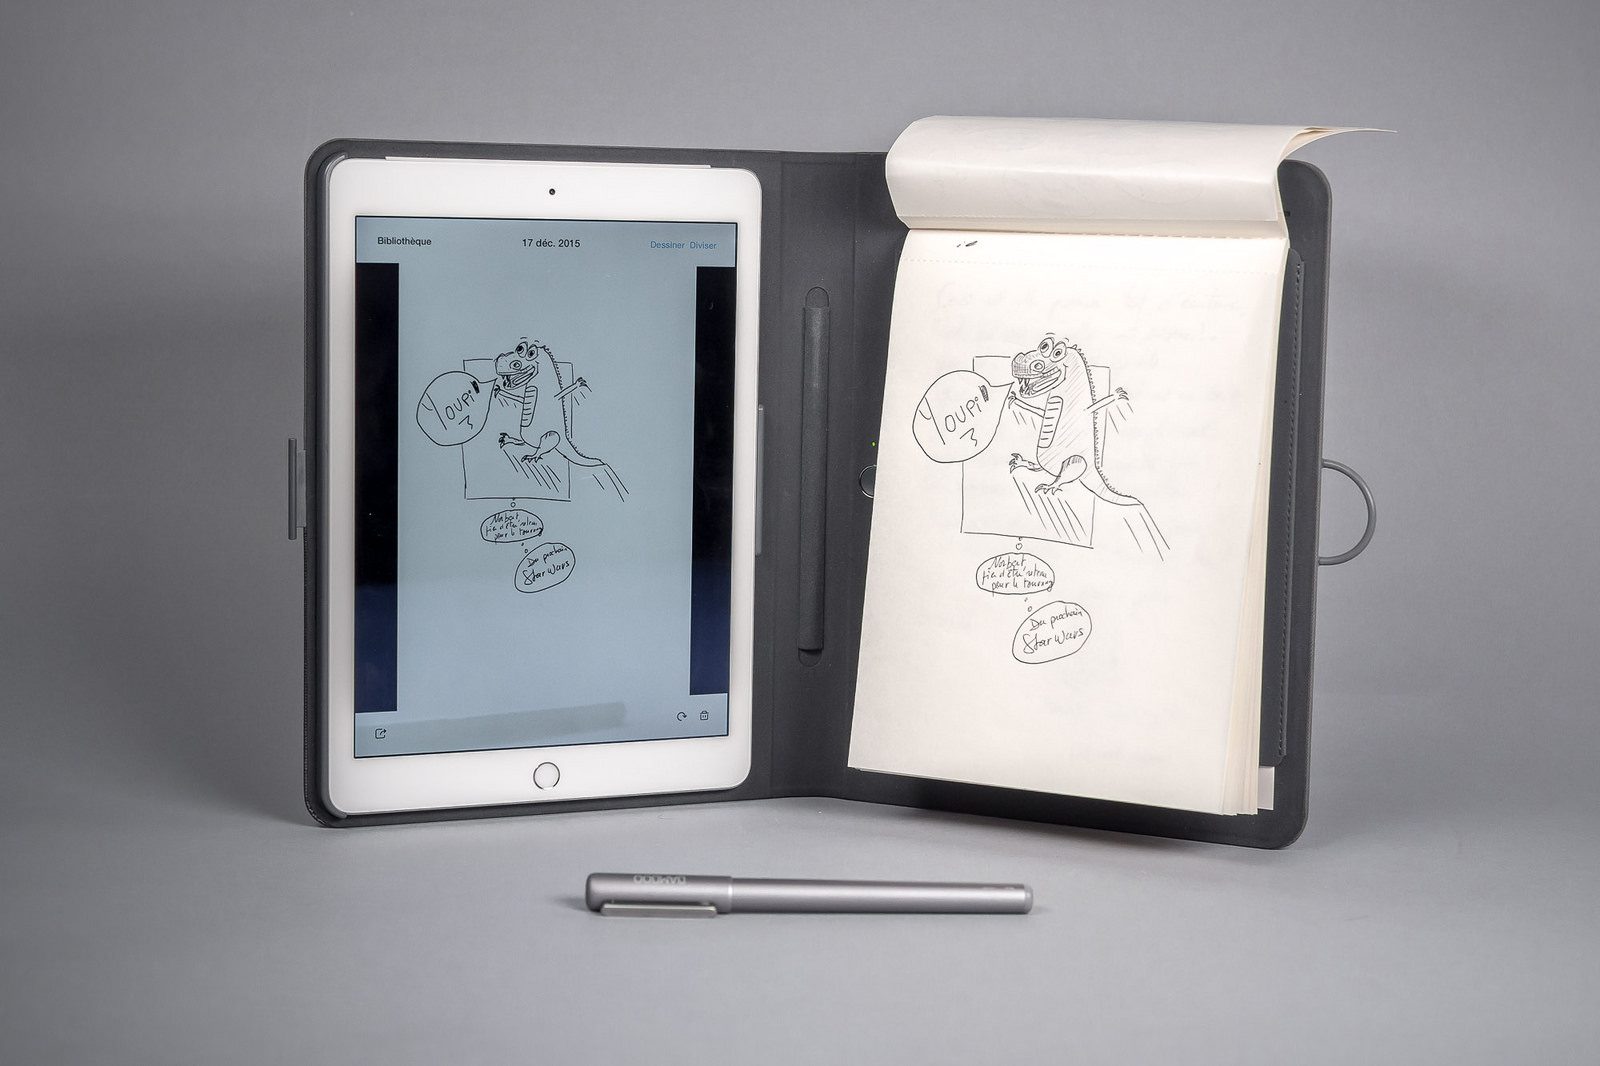 Insolite : Wacom lance un stylet pour iPad